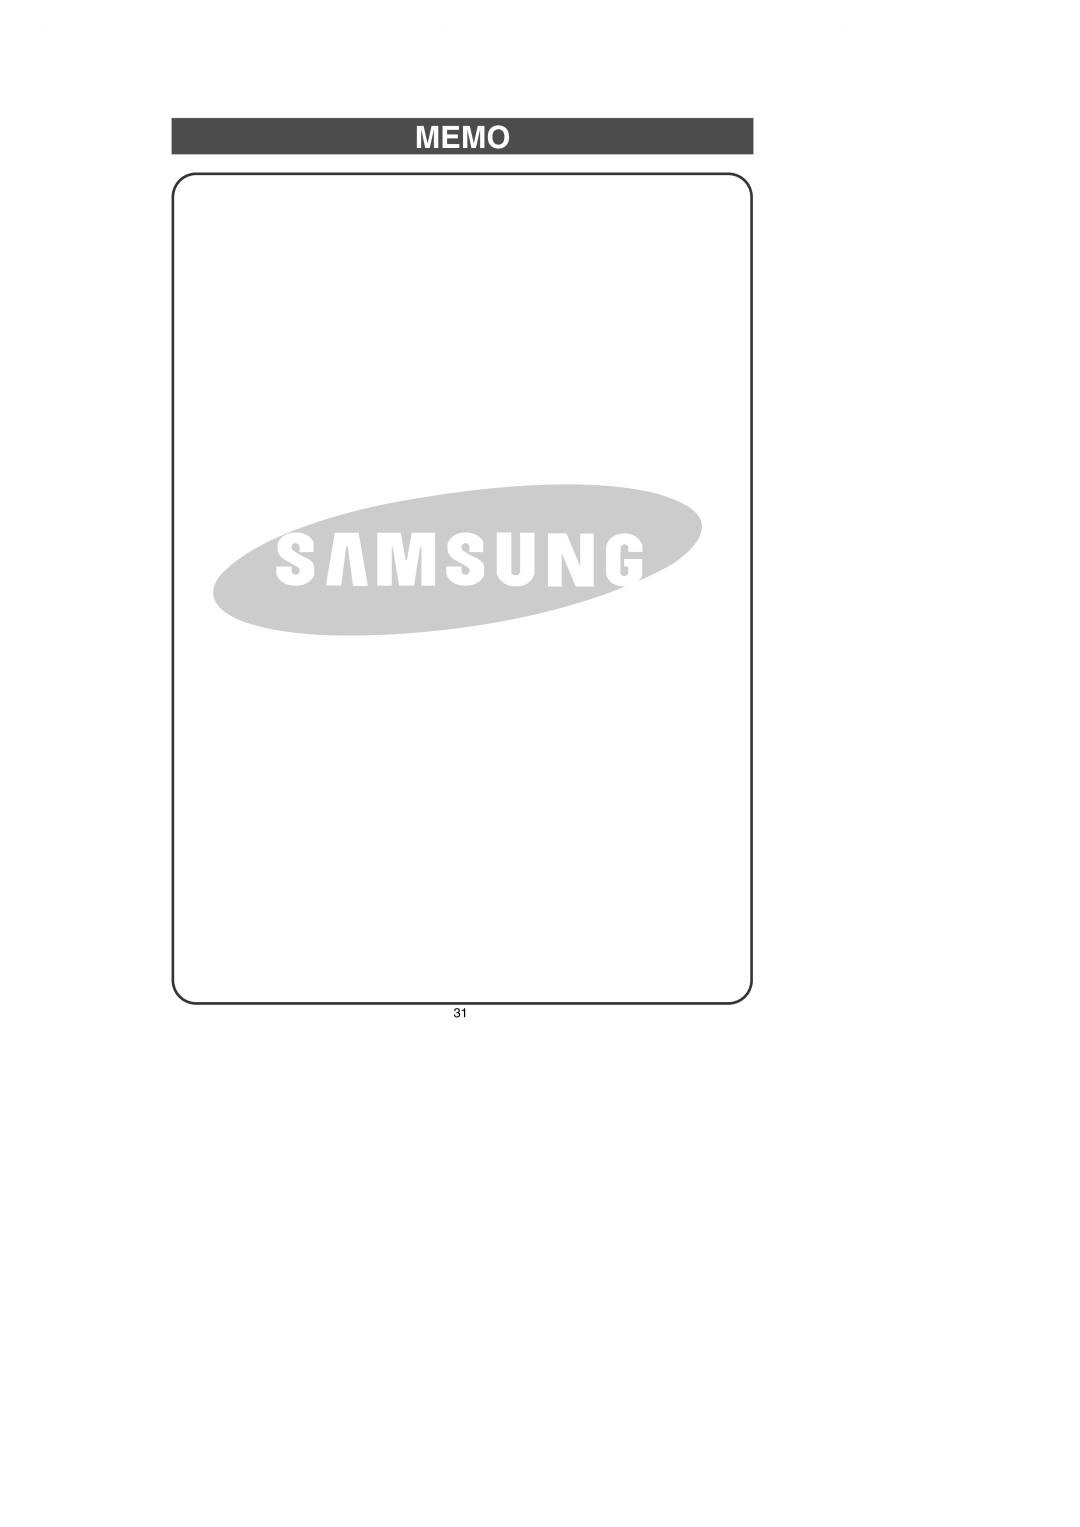 Samsung RS257BAWW owner manual Memo 